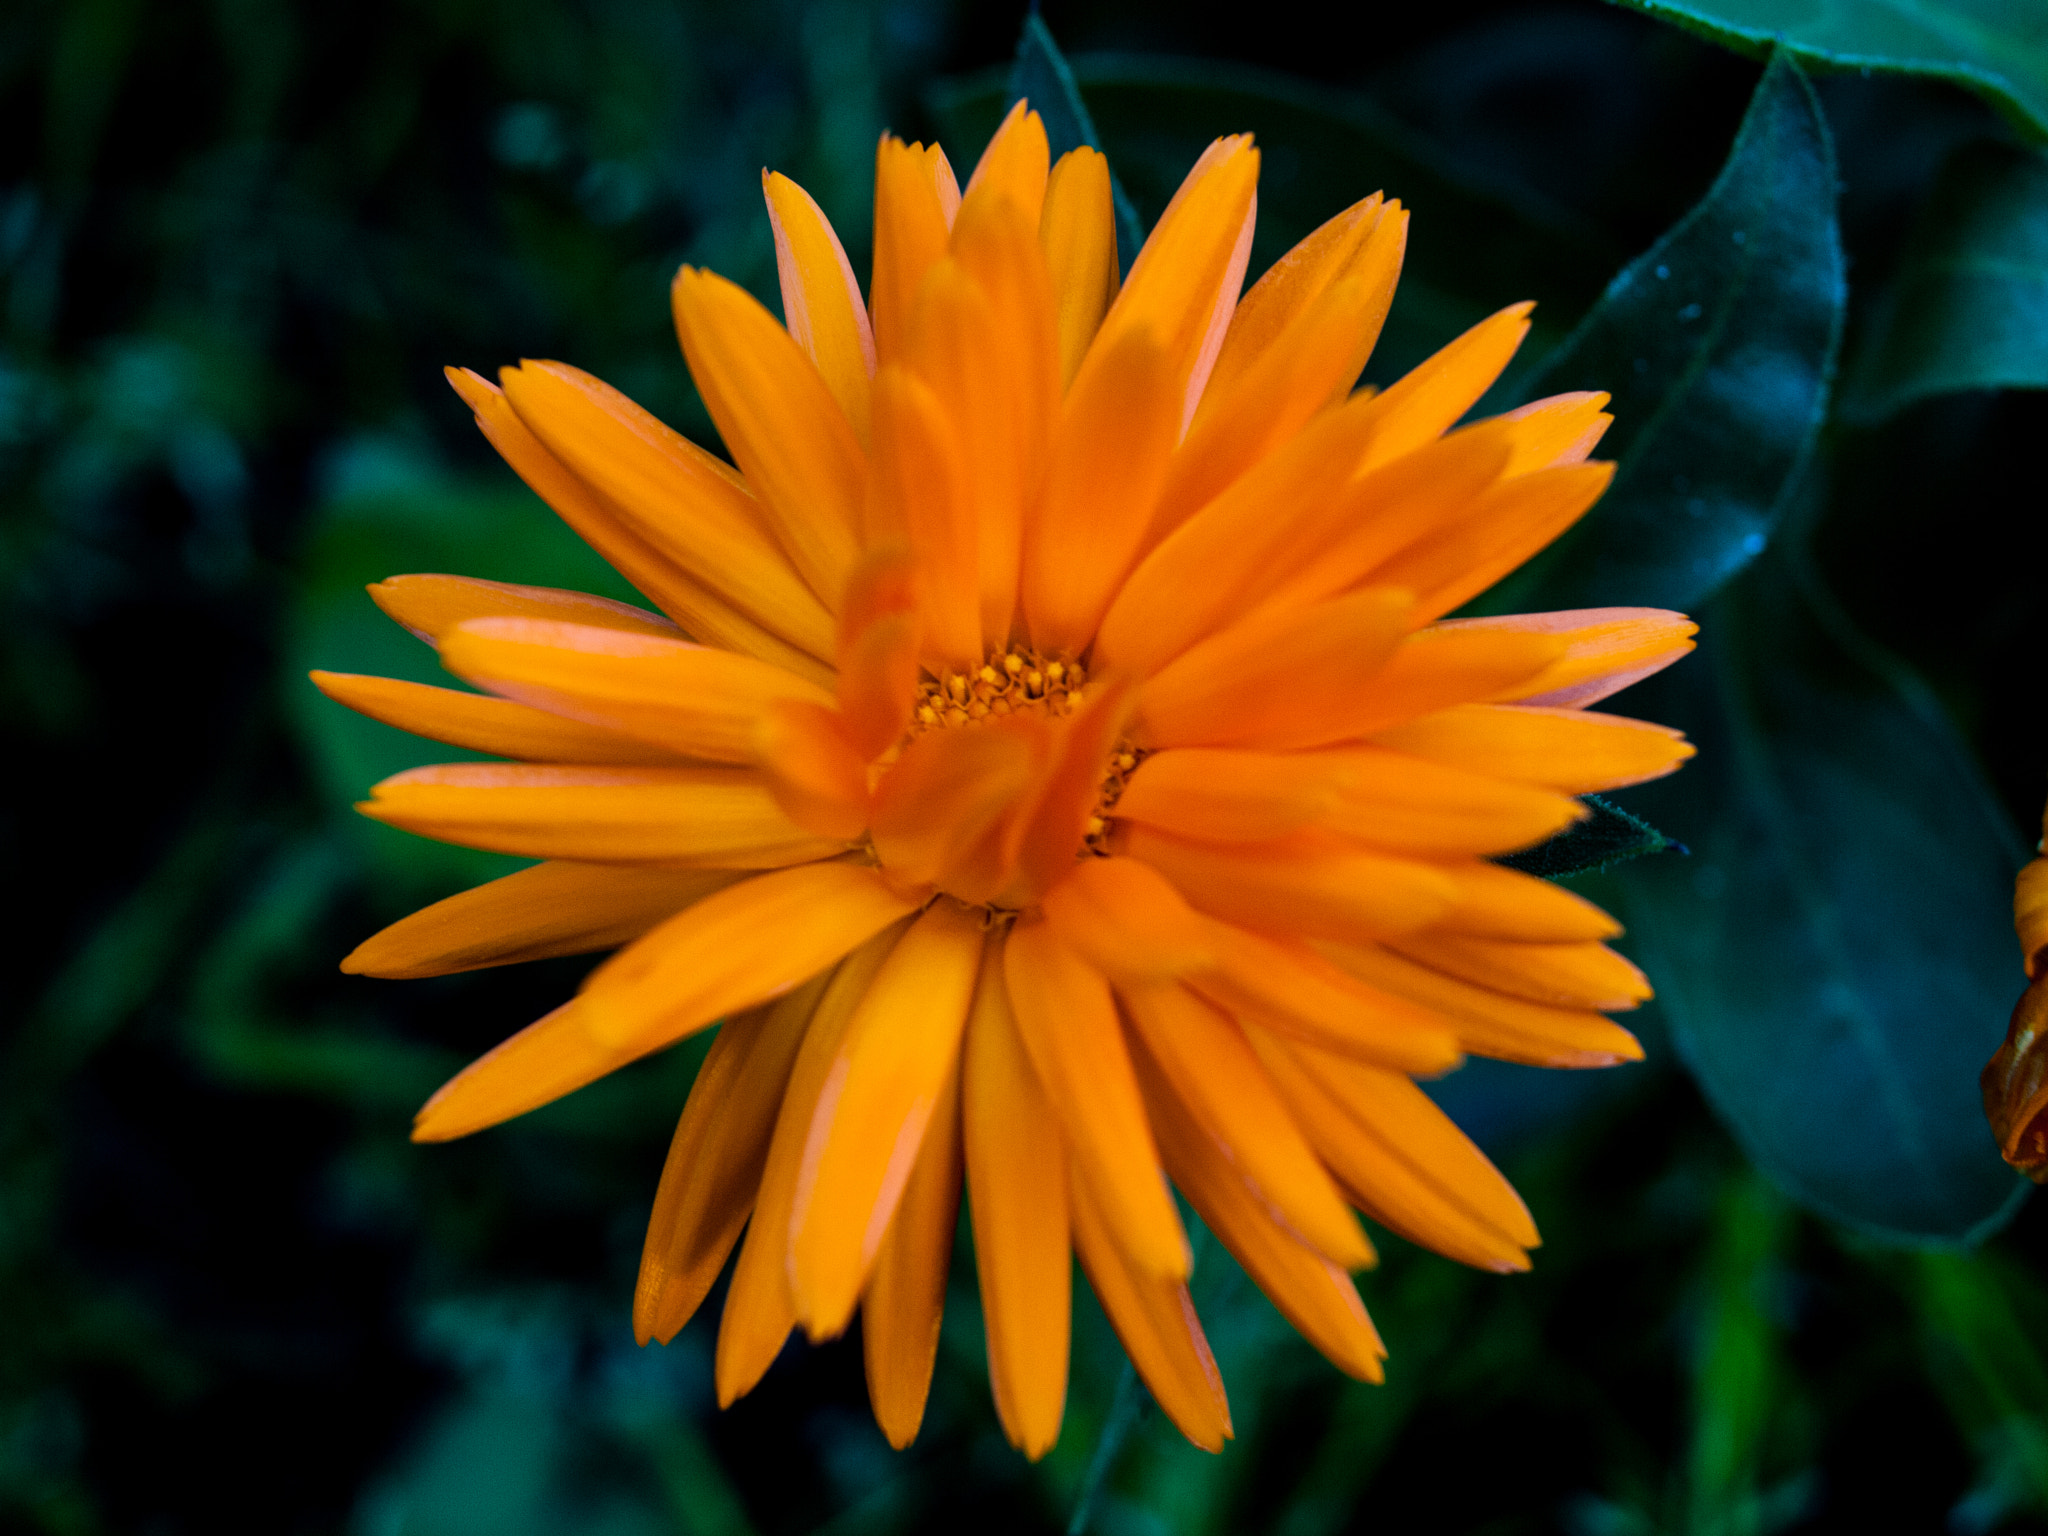 Olympus E-30 sample photo. Orange flower photography